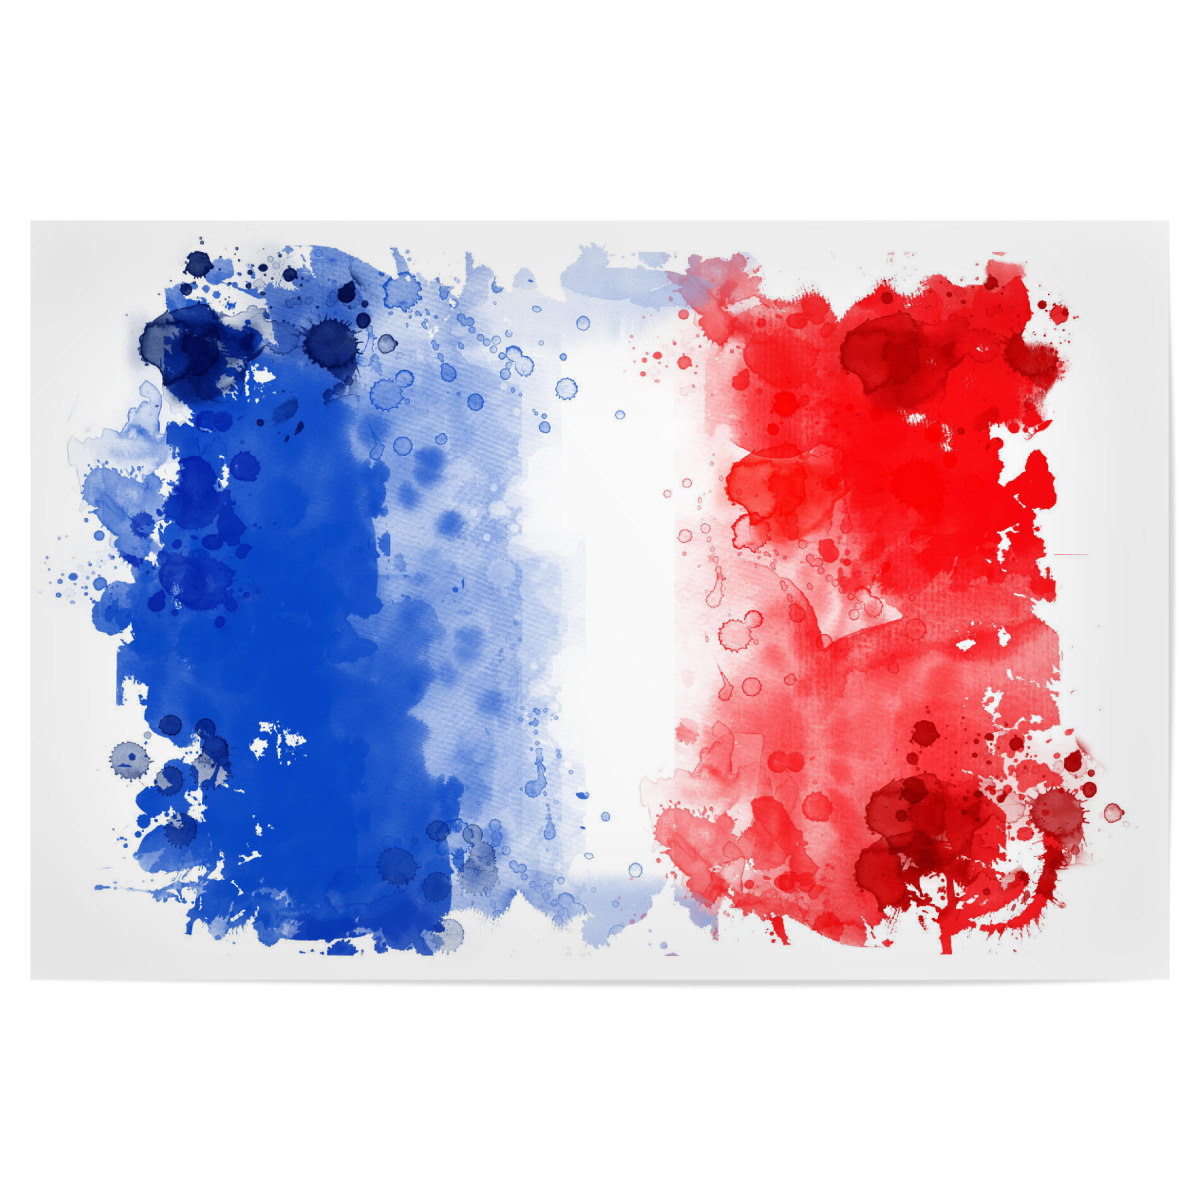 Flagge Frankreich Als Poster Bei Artboxone Kaufen